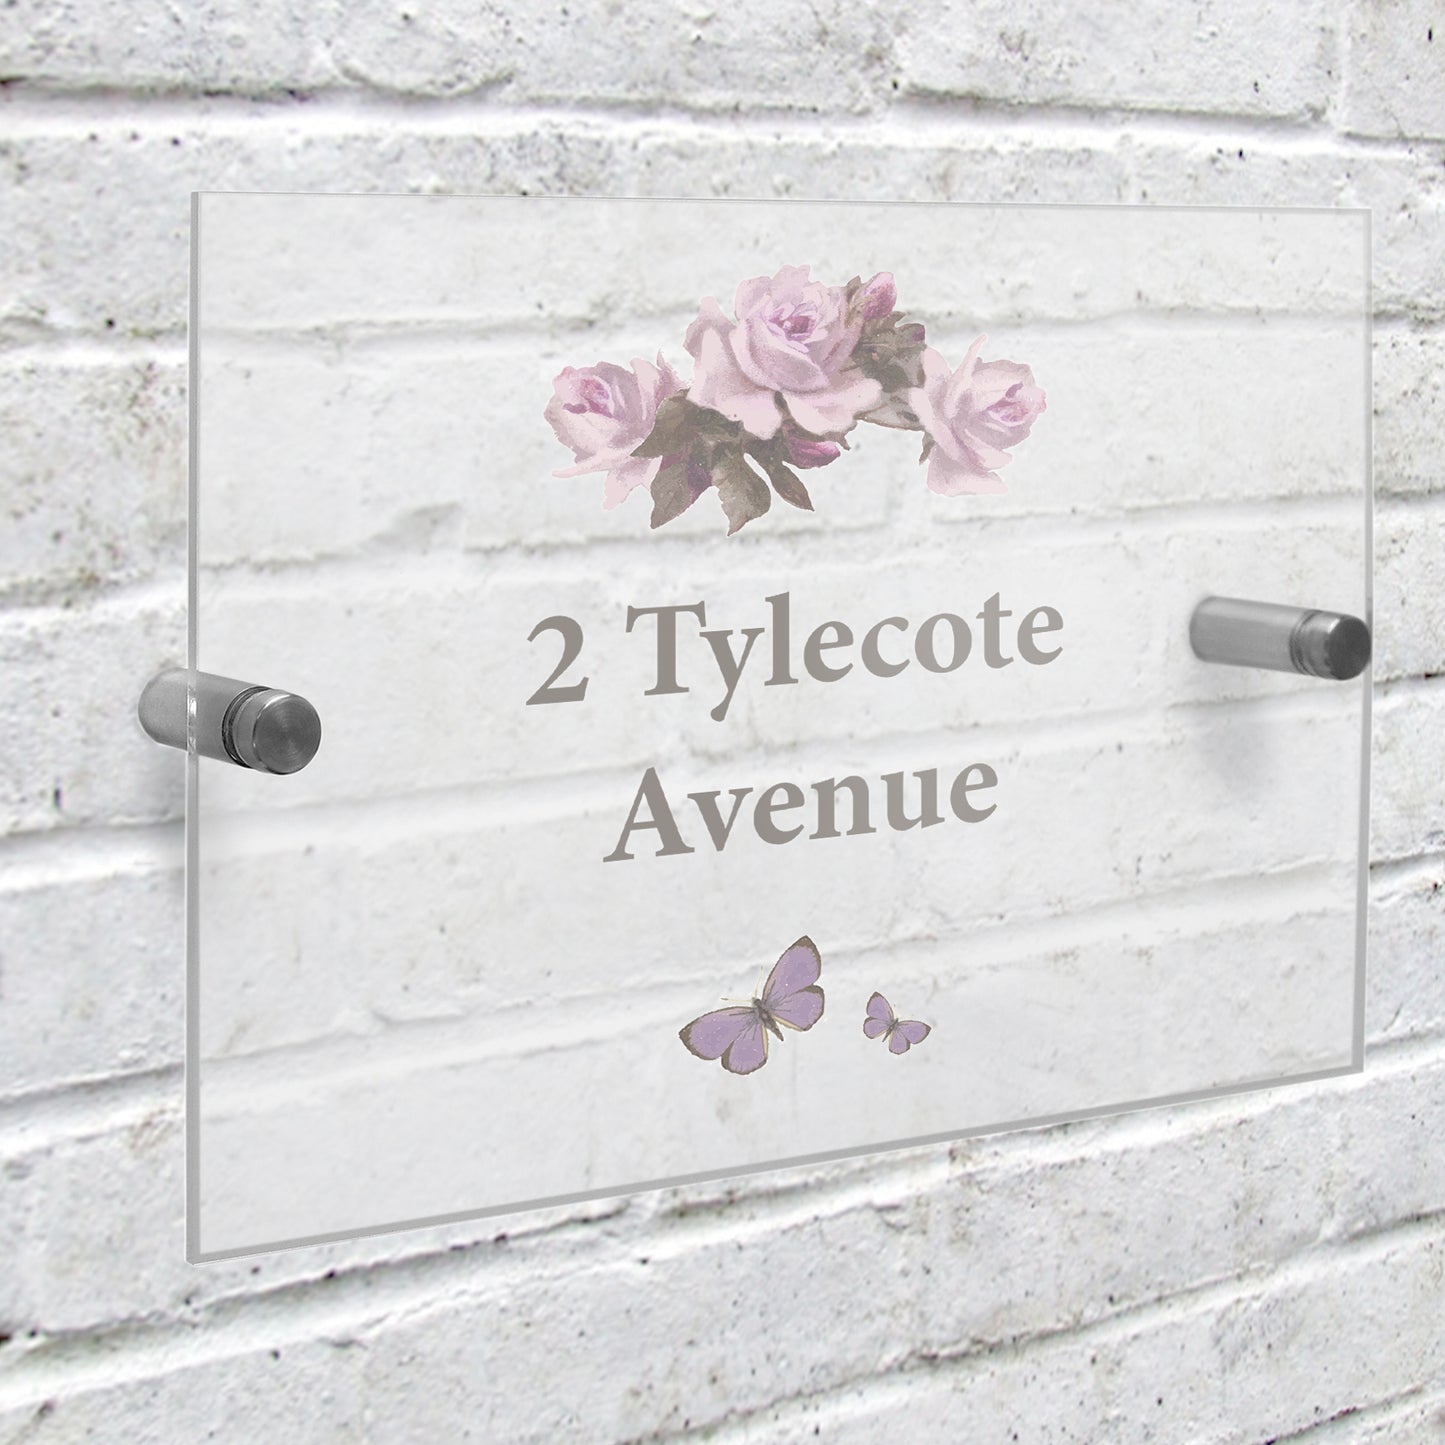 Personalised Door Number Plaque - Rose Design - Violet Belle Gifts - Personalised Door Number Plaque - Rose Design